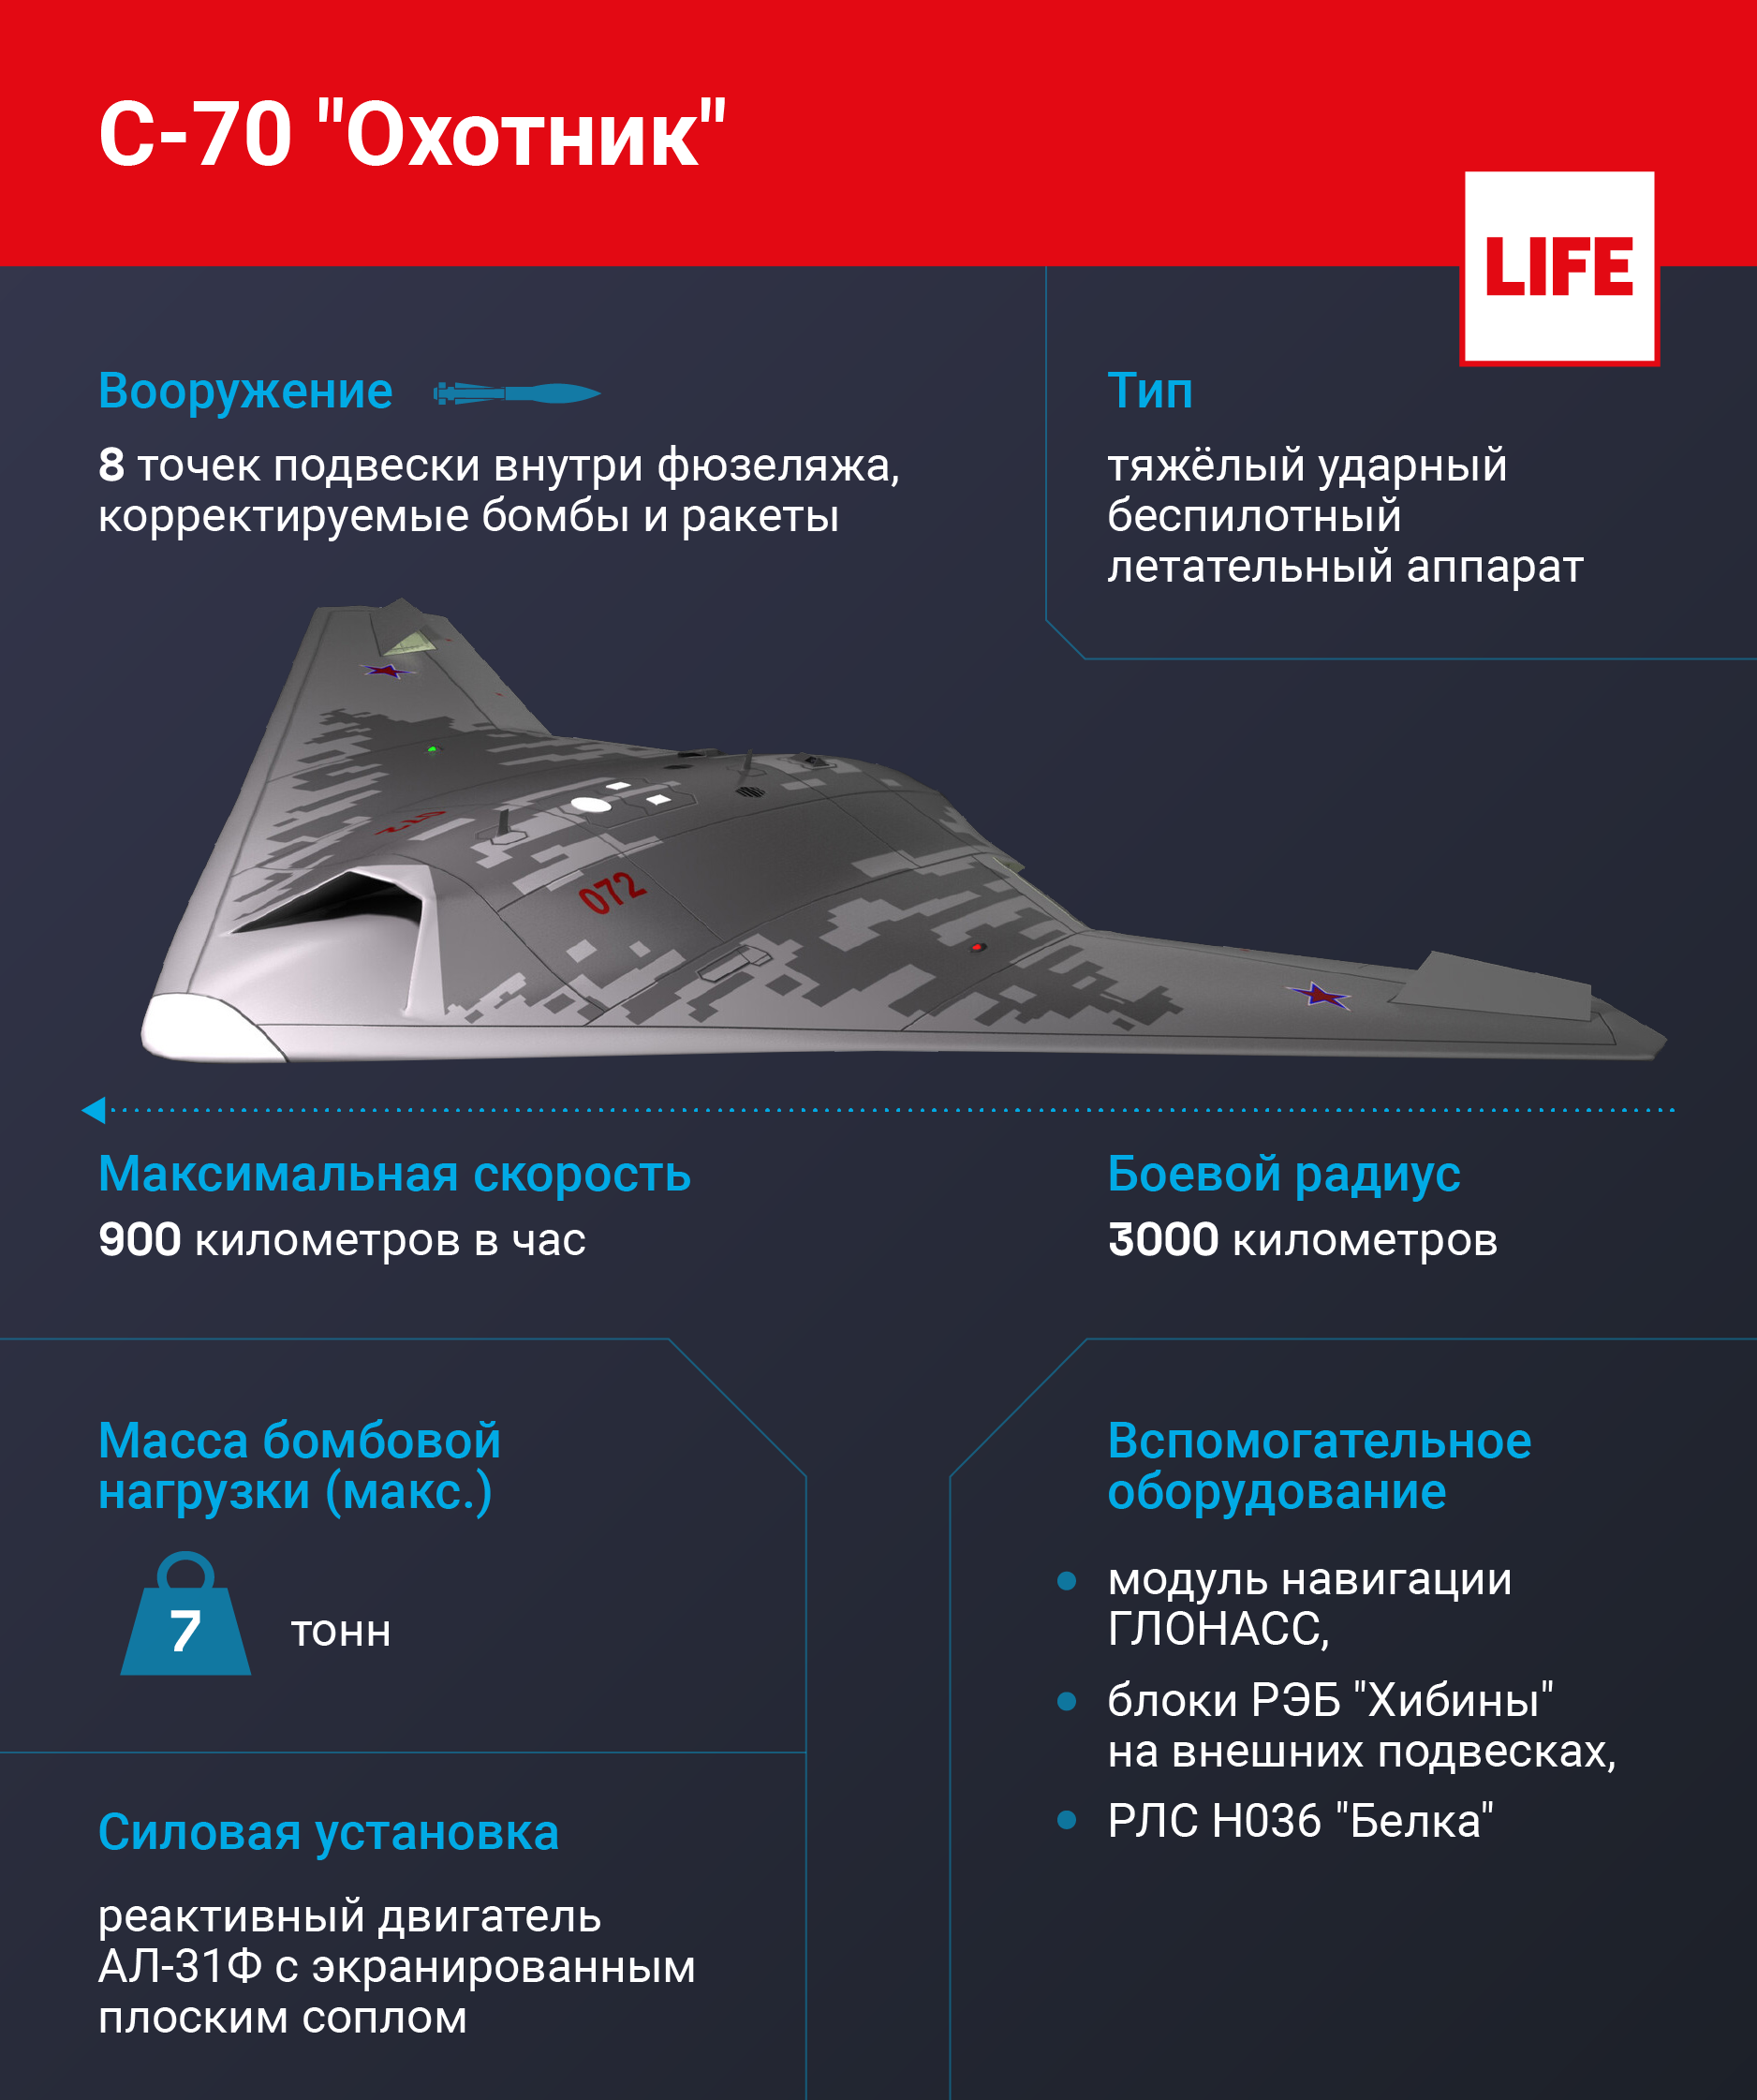  С-70 "Охотник". Инфографика © LIFE